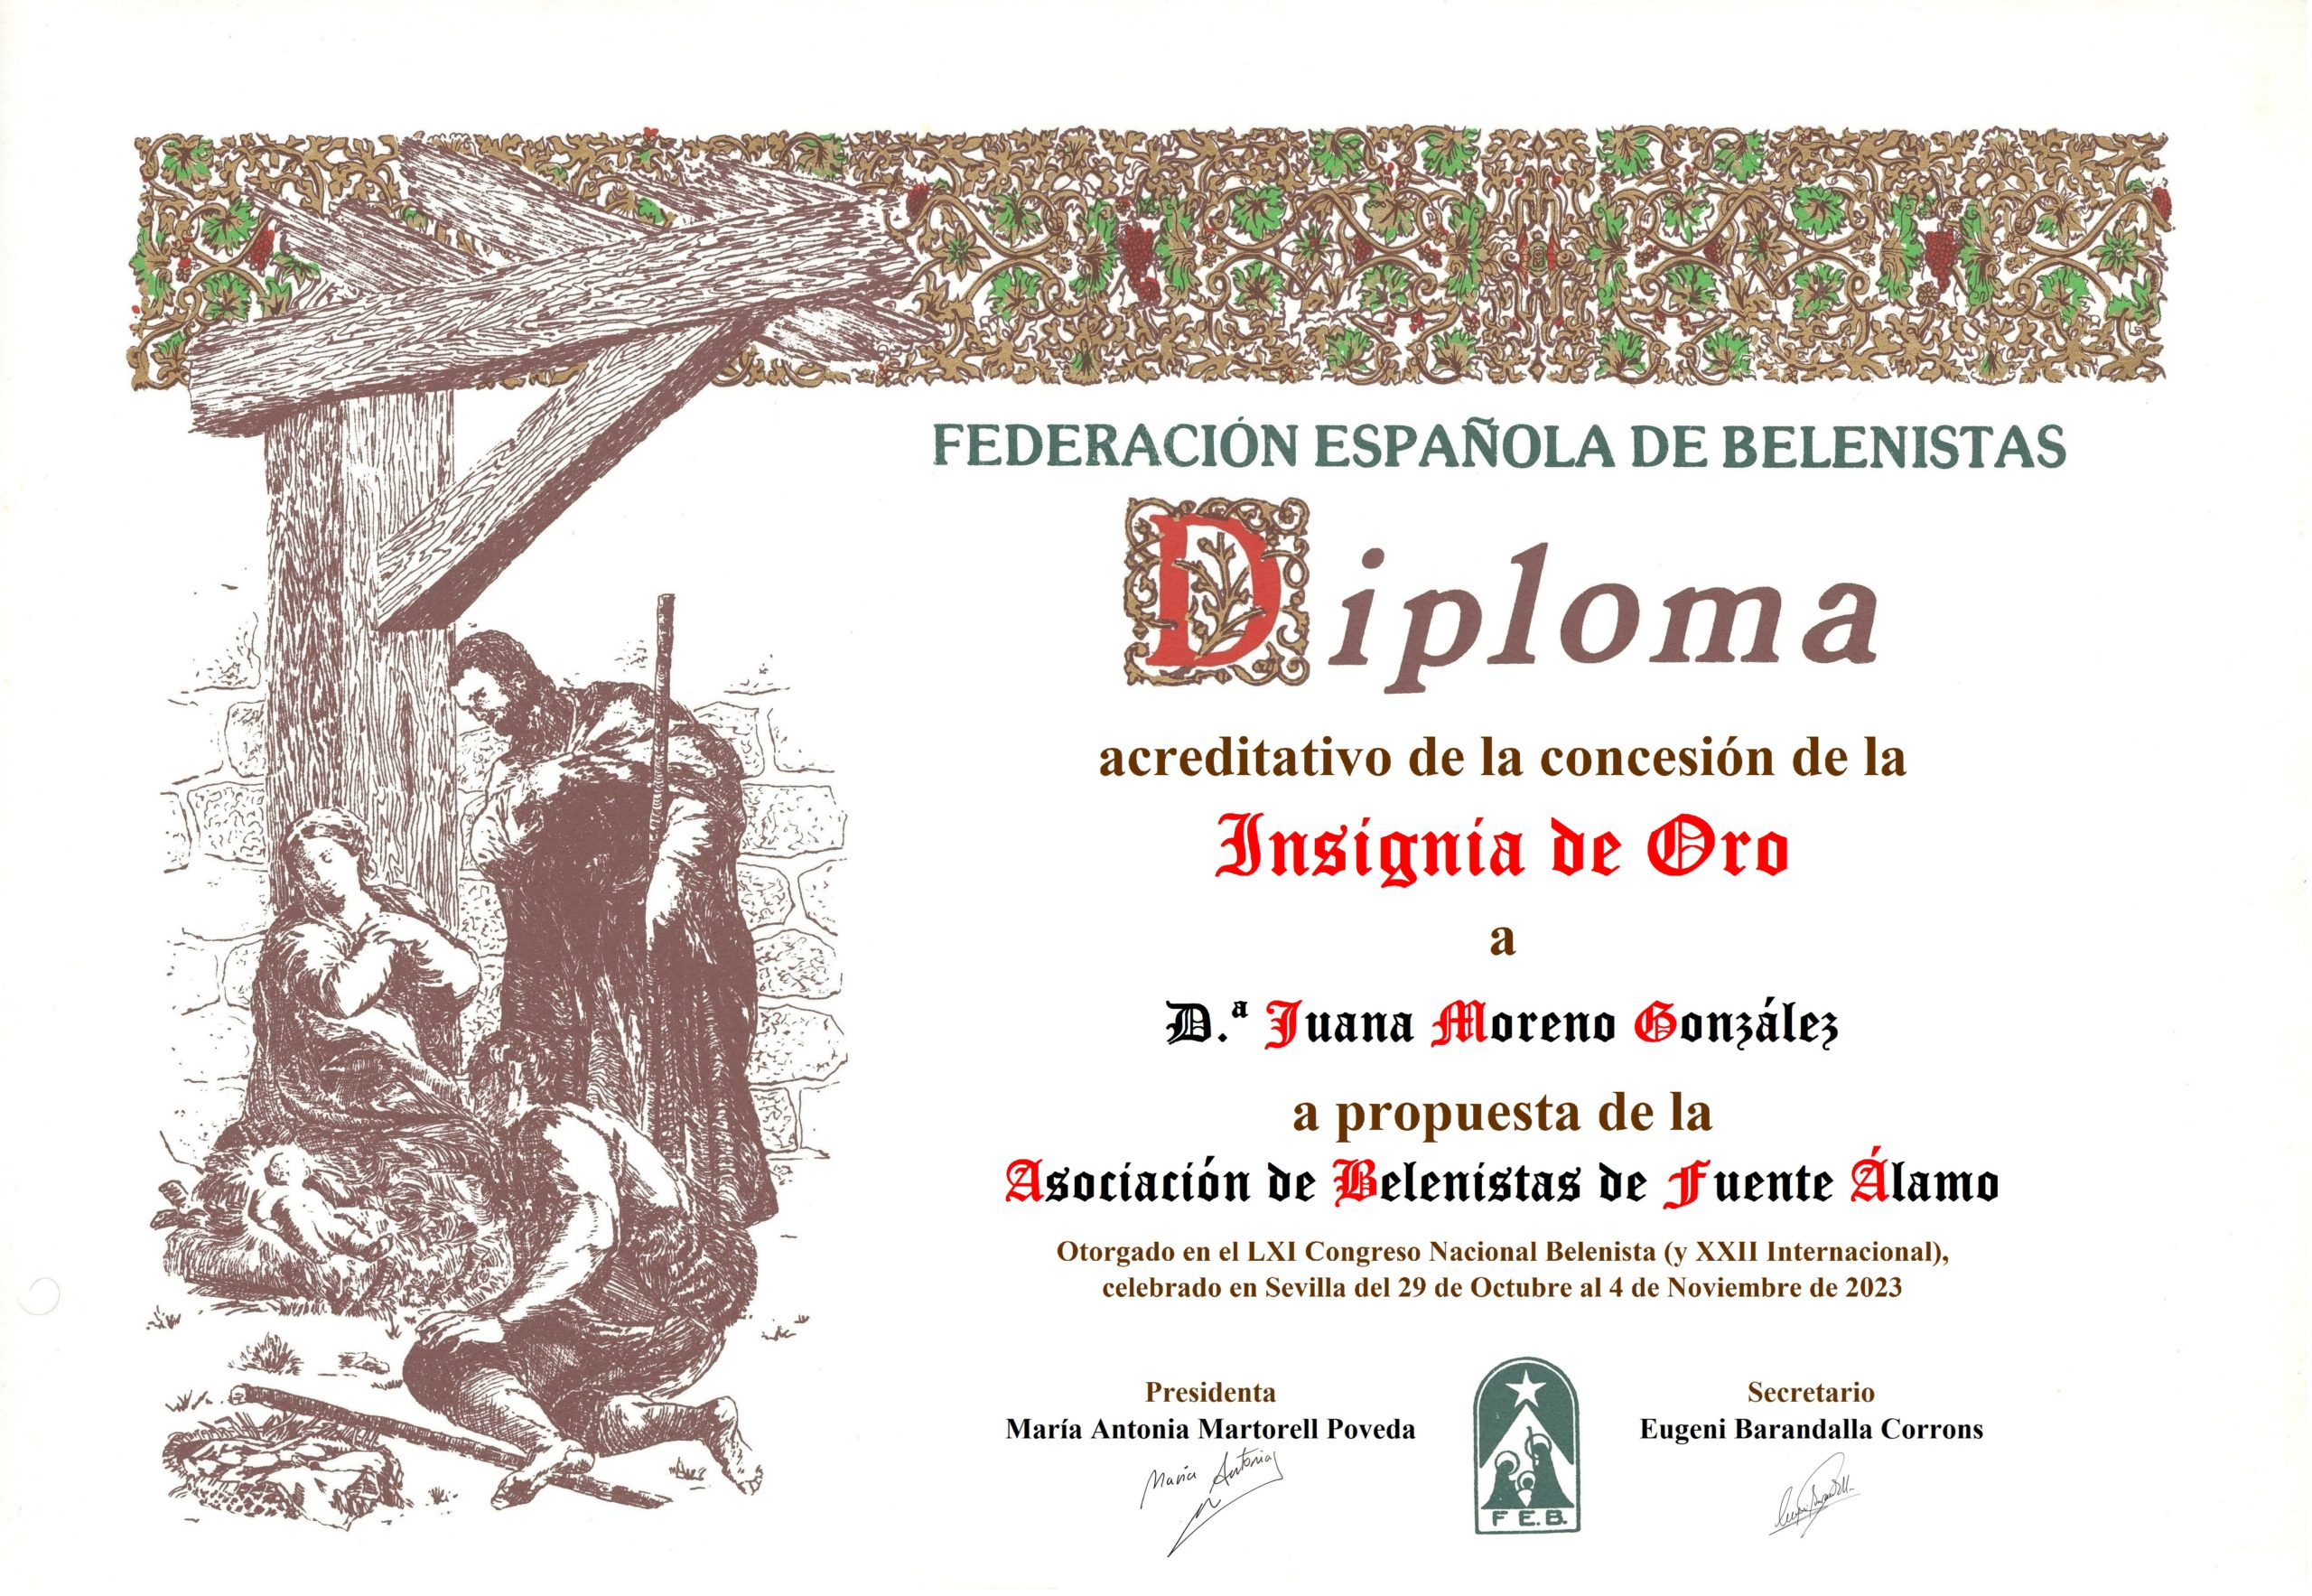 Juana Moreno González - Título/Diploma Insignia de Oro FEB 2023